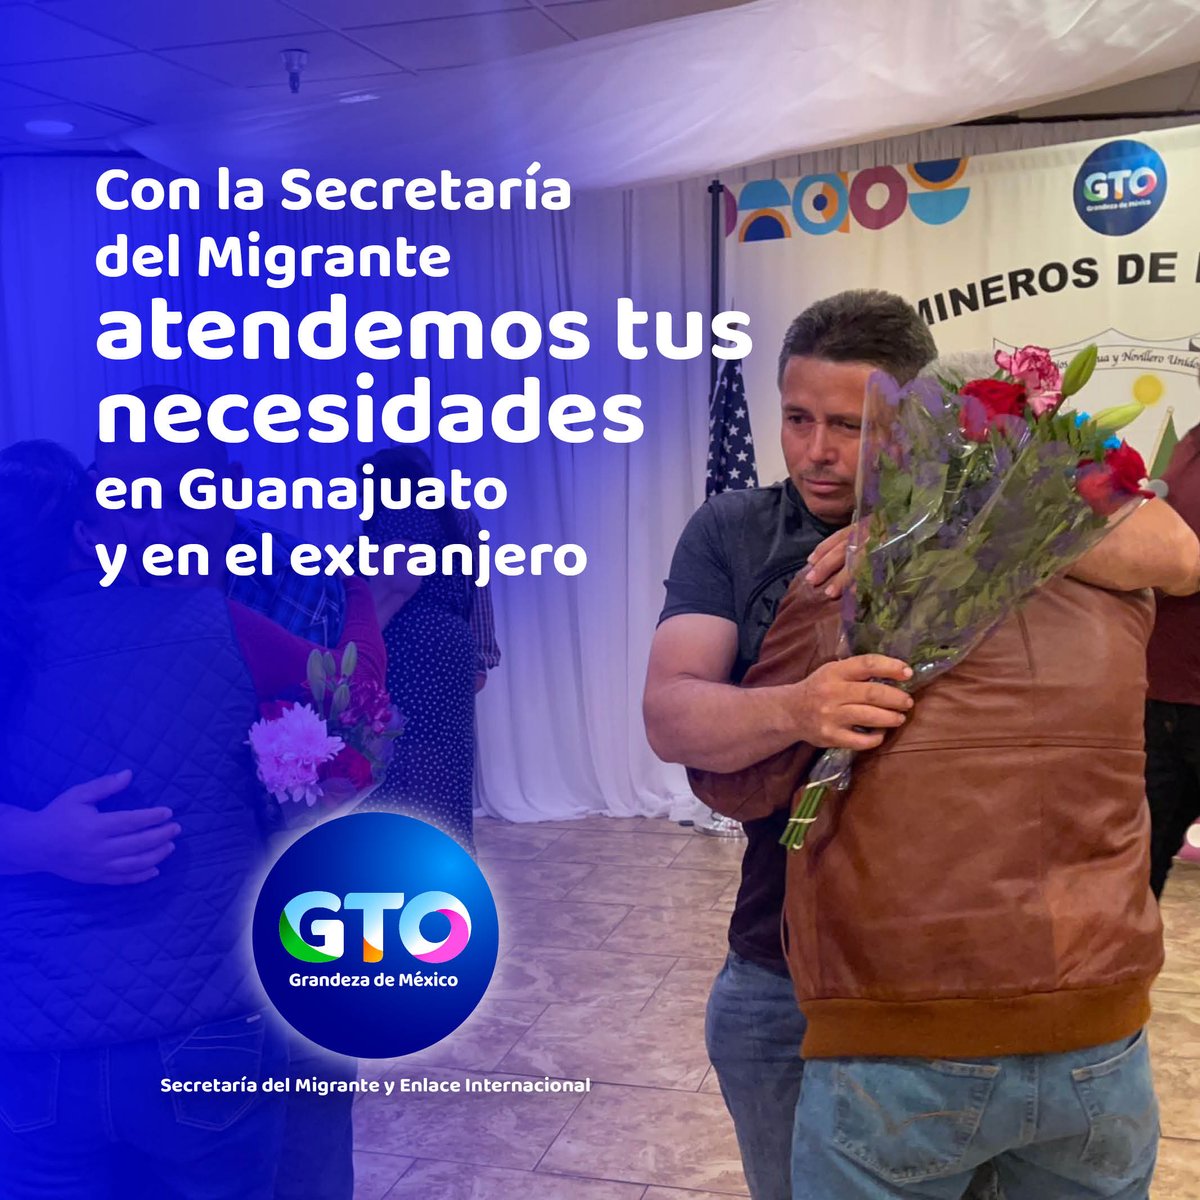 Con la creación de la Secretaría del Migrante y Enlace Internacional brindamos programas y servicios para mejorar la atención a toda la comunidad migrante. 👨🏻👩🏻‍🦳🛫🧳🚃 #UnidosConstruimosGTO ##GTO #GrandezaDeMéxico